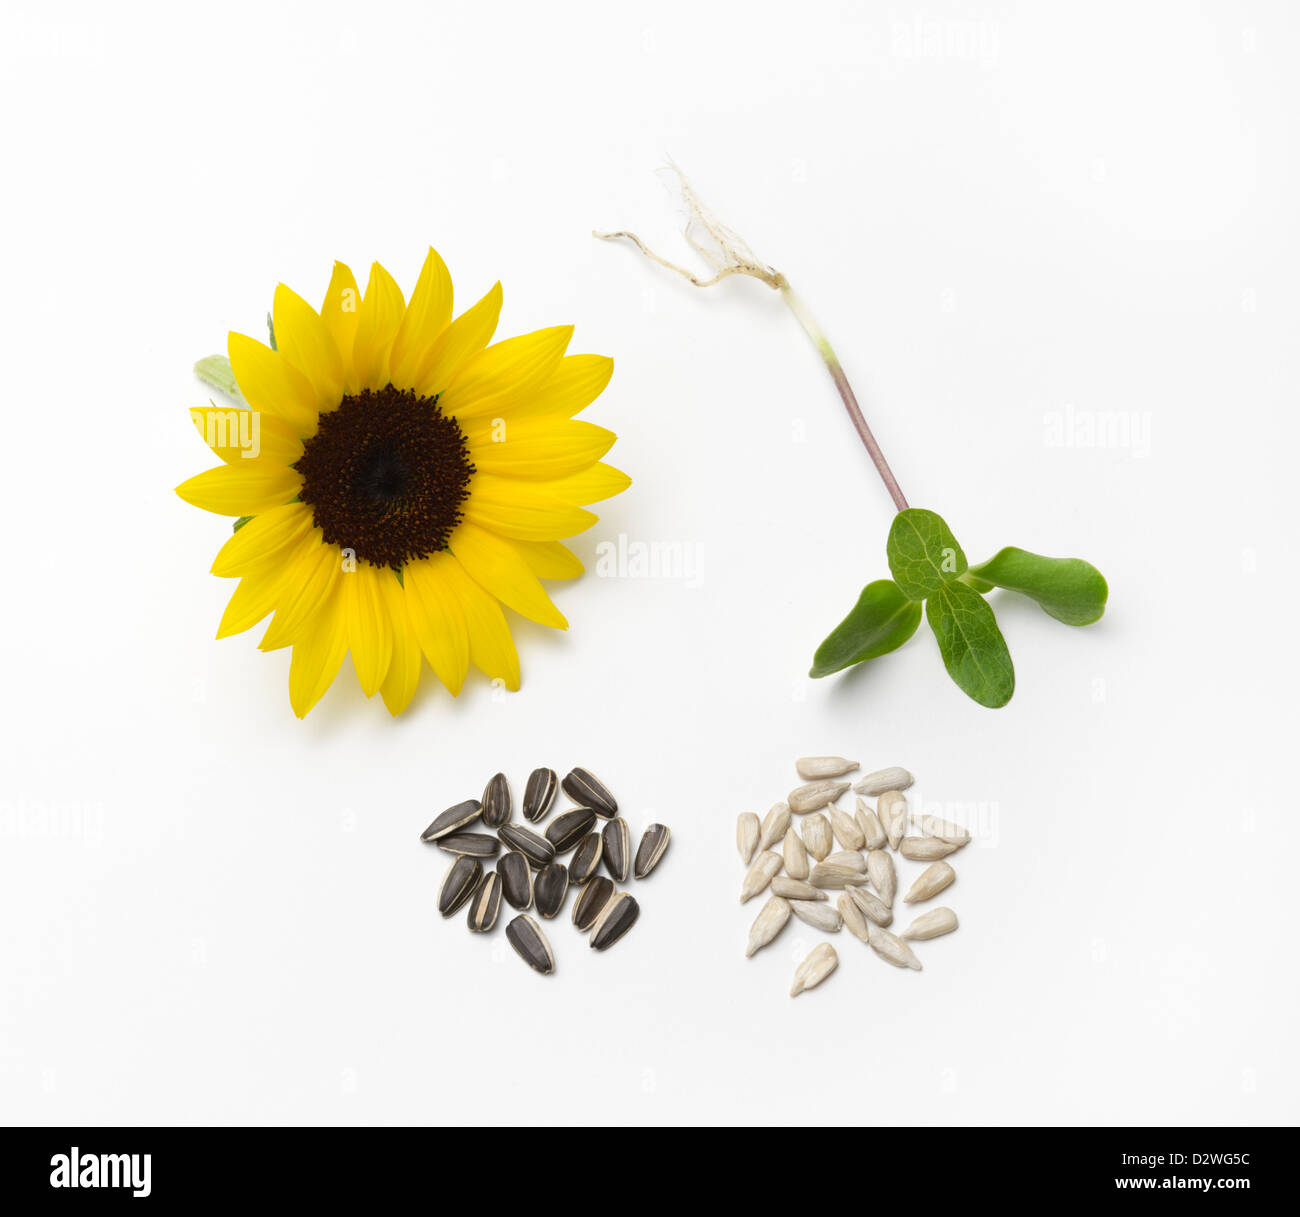 Sonnenblume Lebenszyklus mit Keimling, Samen (mit schwarzer Samenschale und ohne) und Blume. Stockfoto